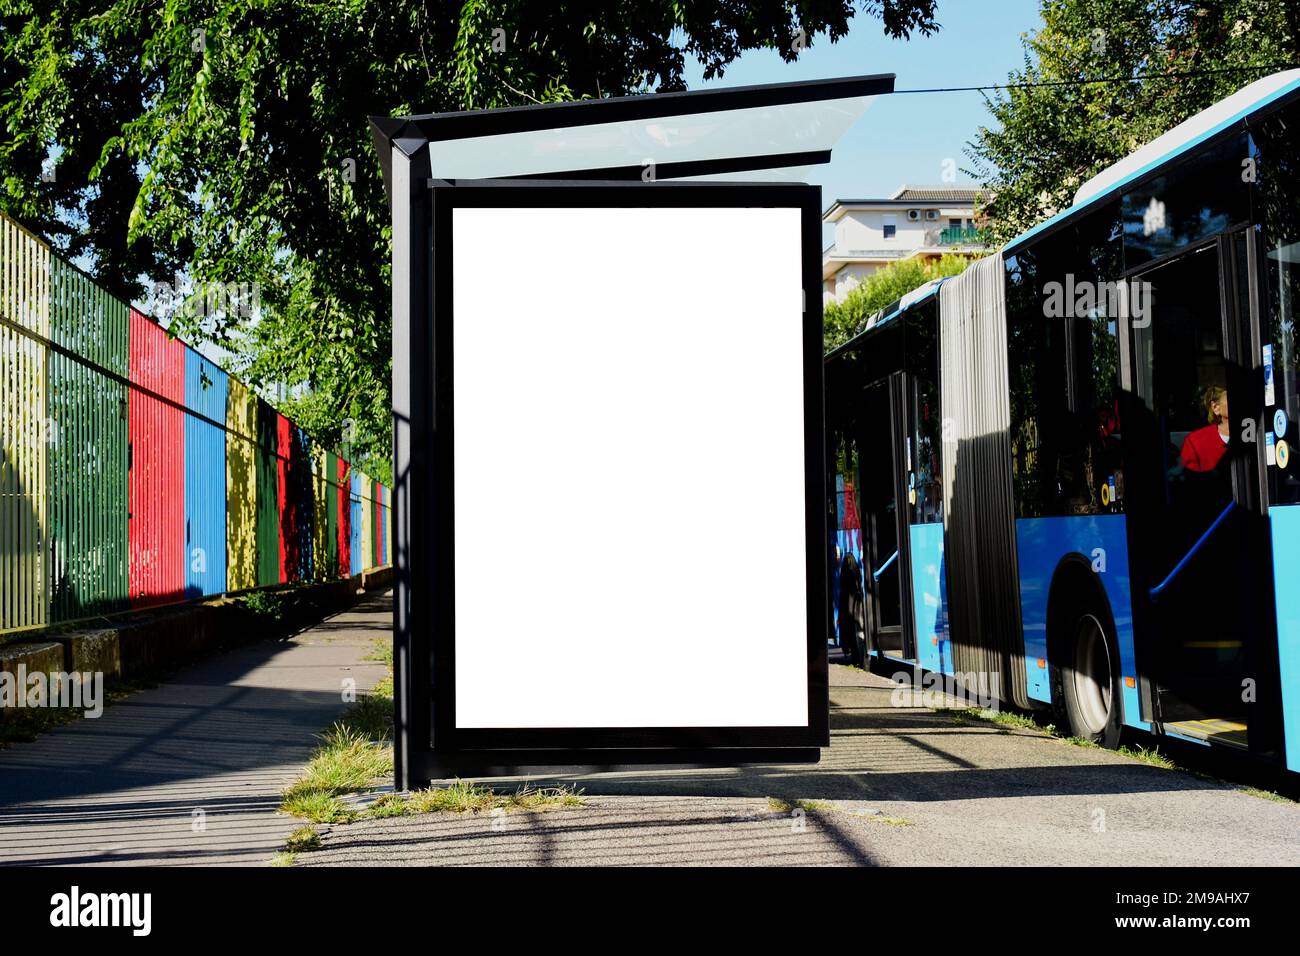 Busunterkunft mit Lightbox-Anzeigeschild. Modellhintergrund. Werbetafel aus Glas mit leerer weißer Anzeigefläche. Blauer Bus an der Bushaltestelle. Schild für den Außenbereich Stockfoto